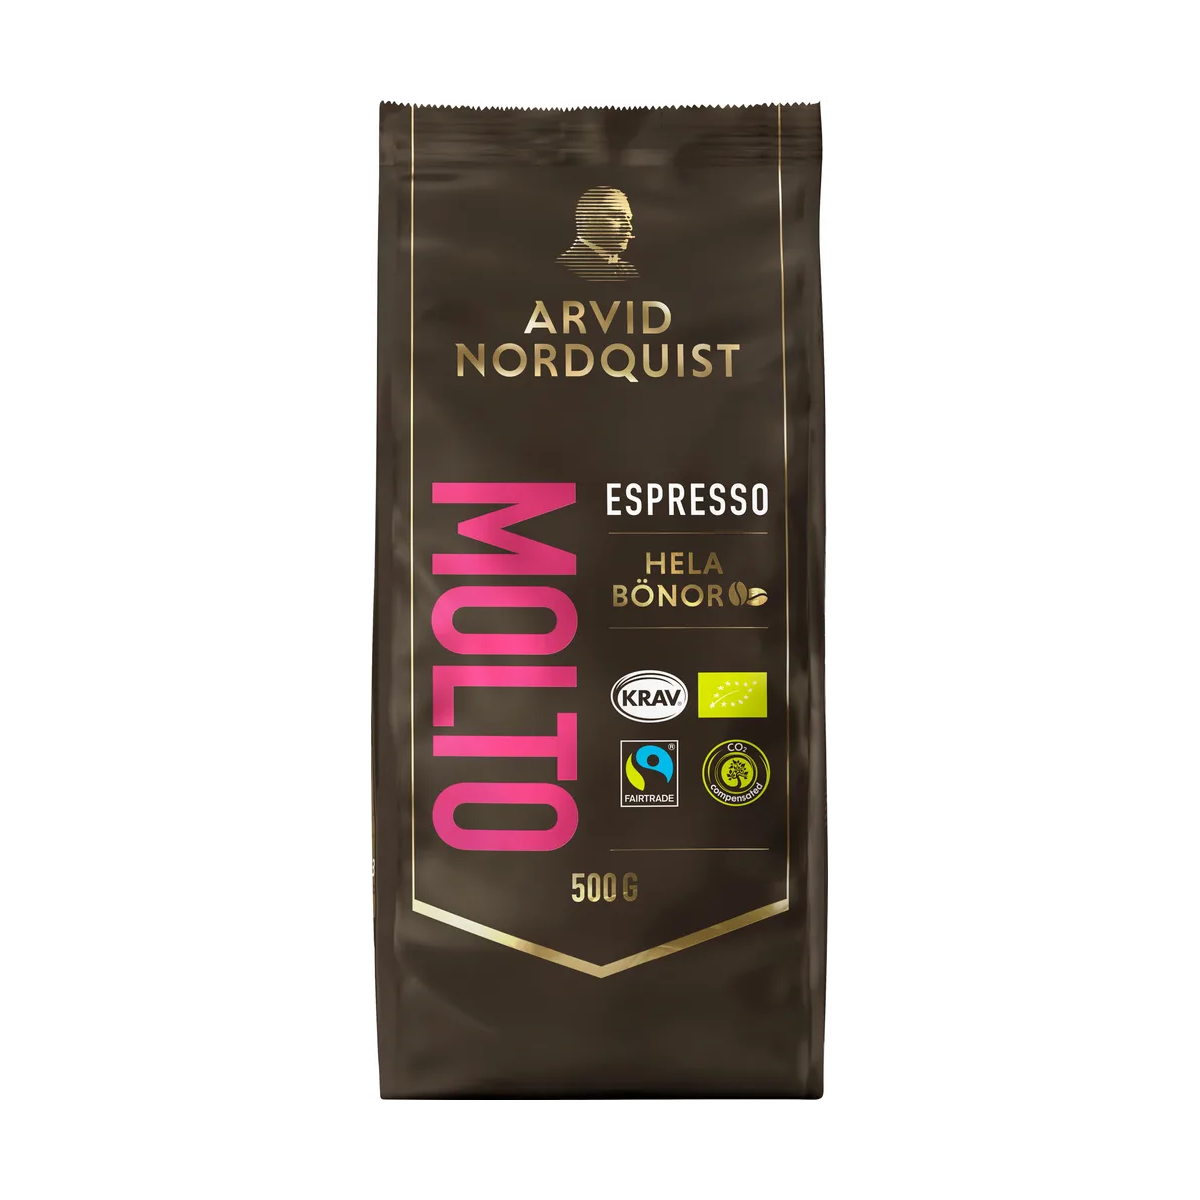 Arvid Nordquist Espresso Molto, Whole Beans - 500 grams